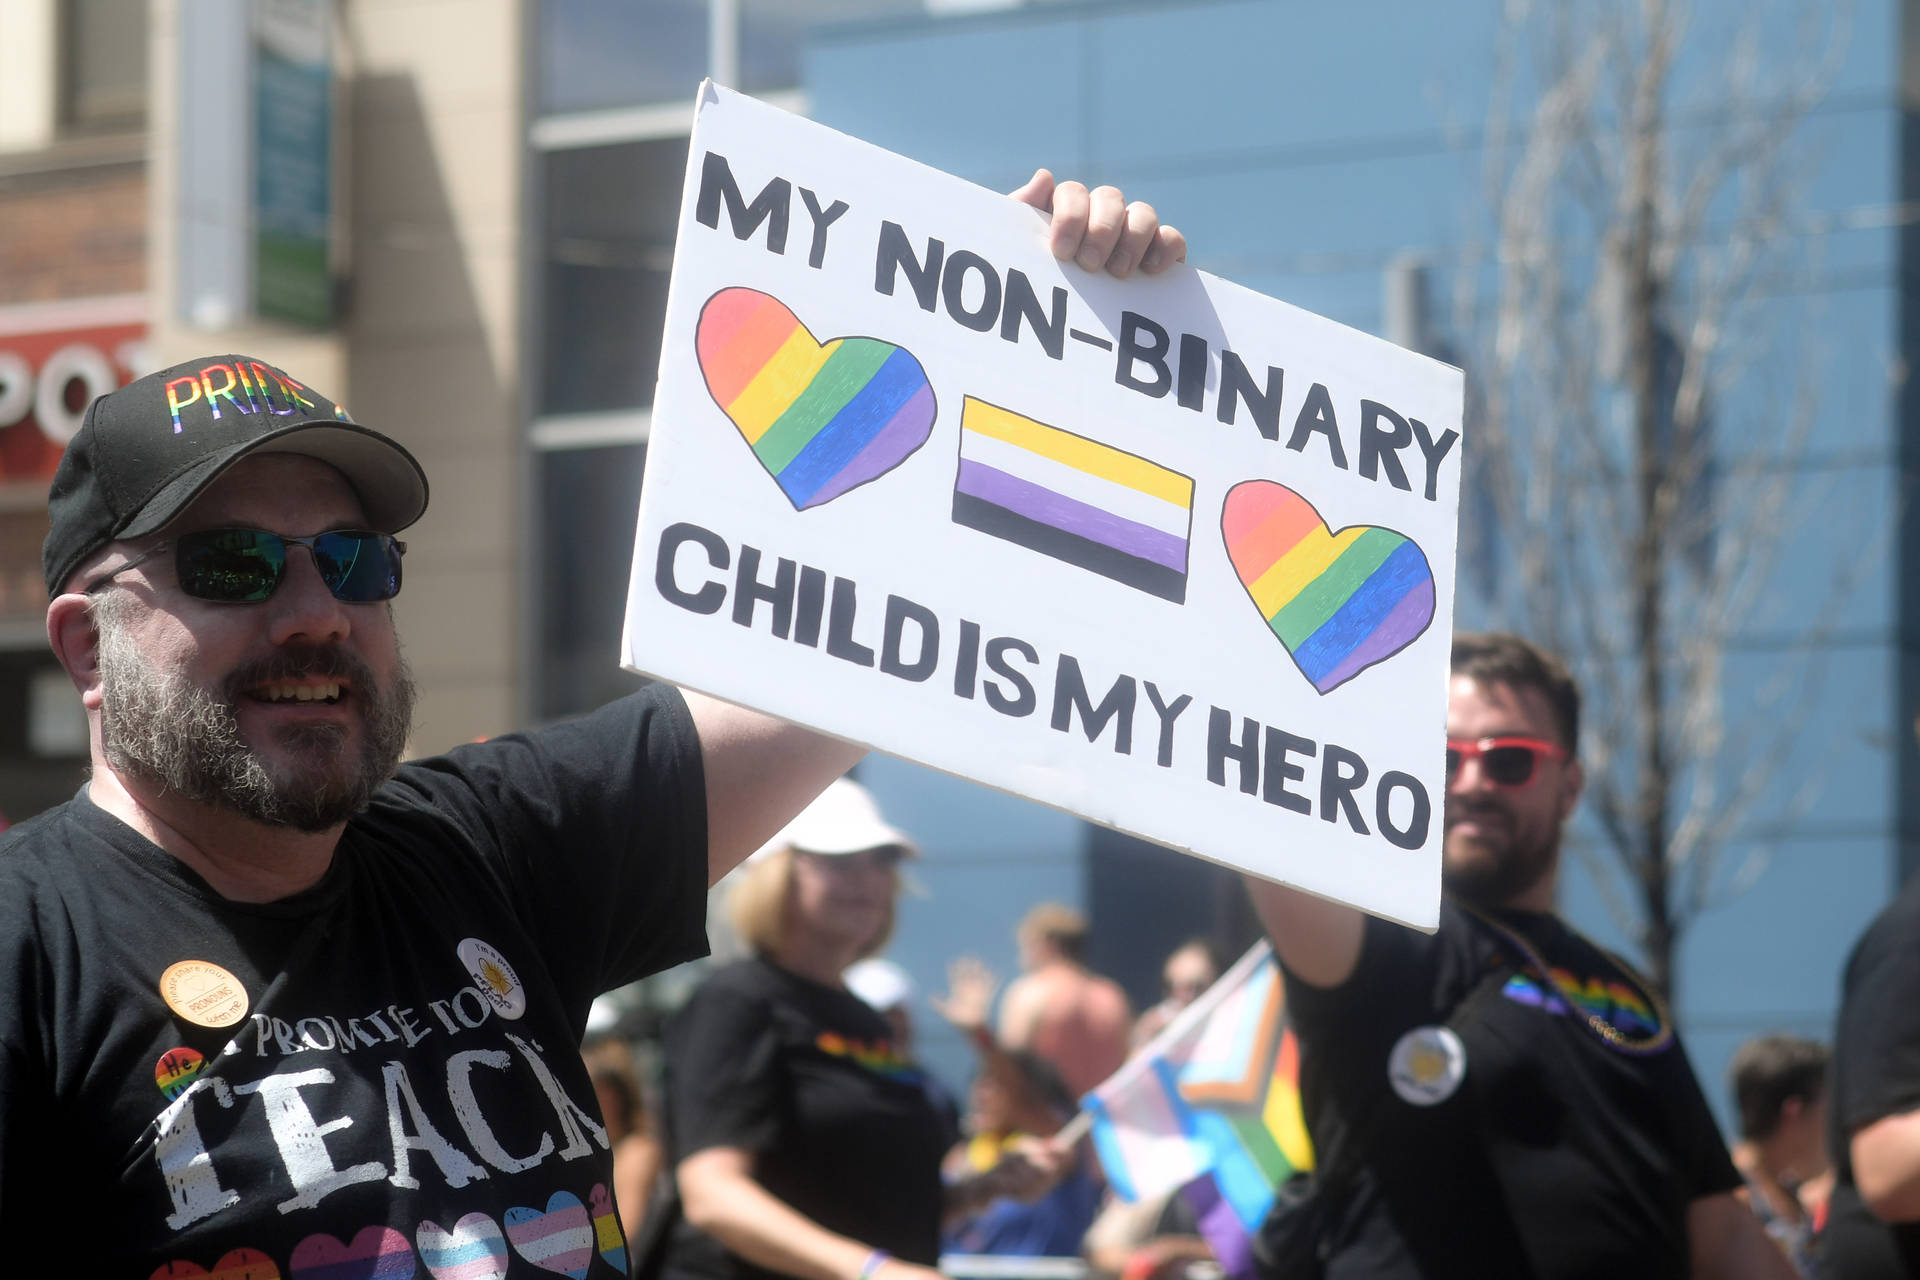 Non-binary Father In Protest